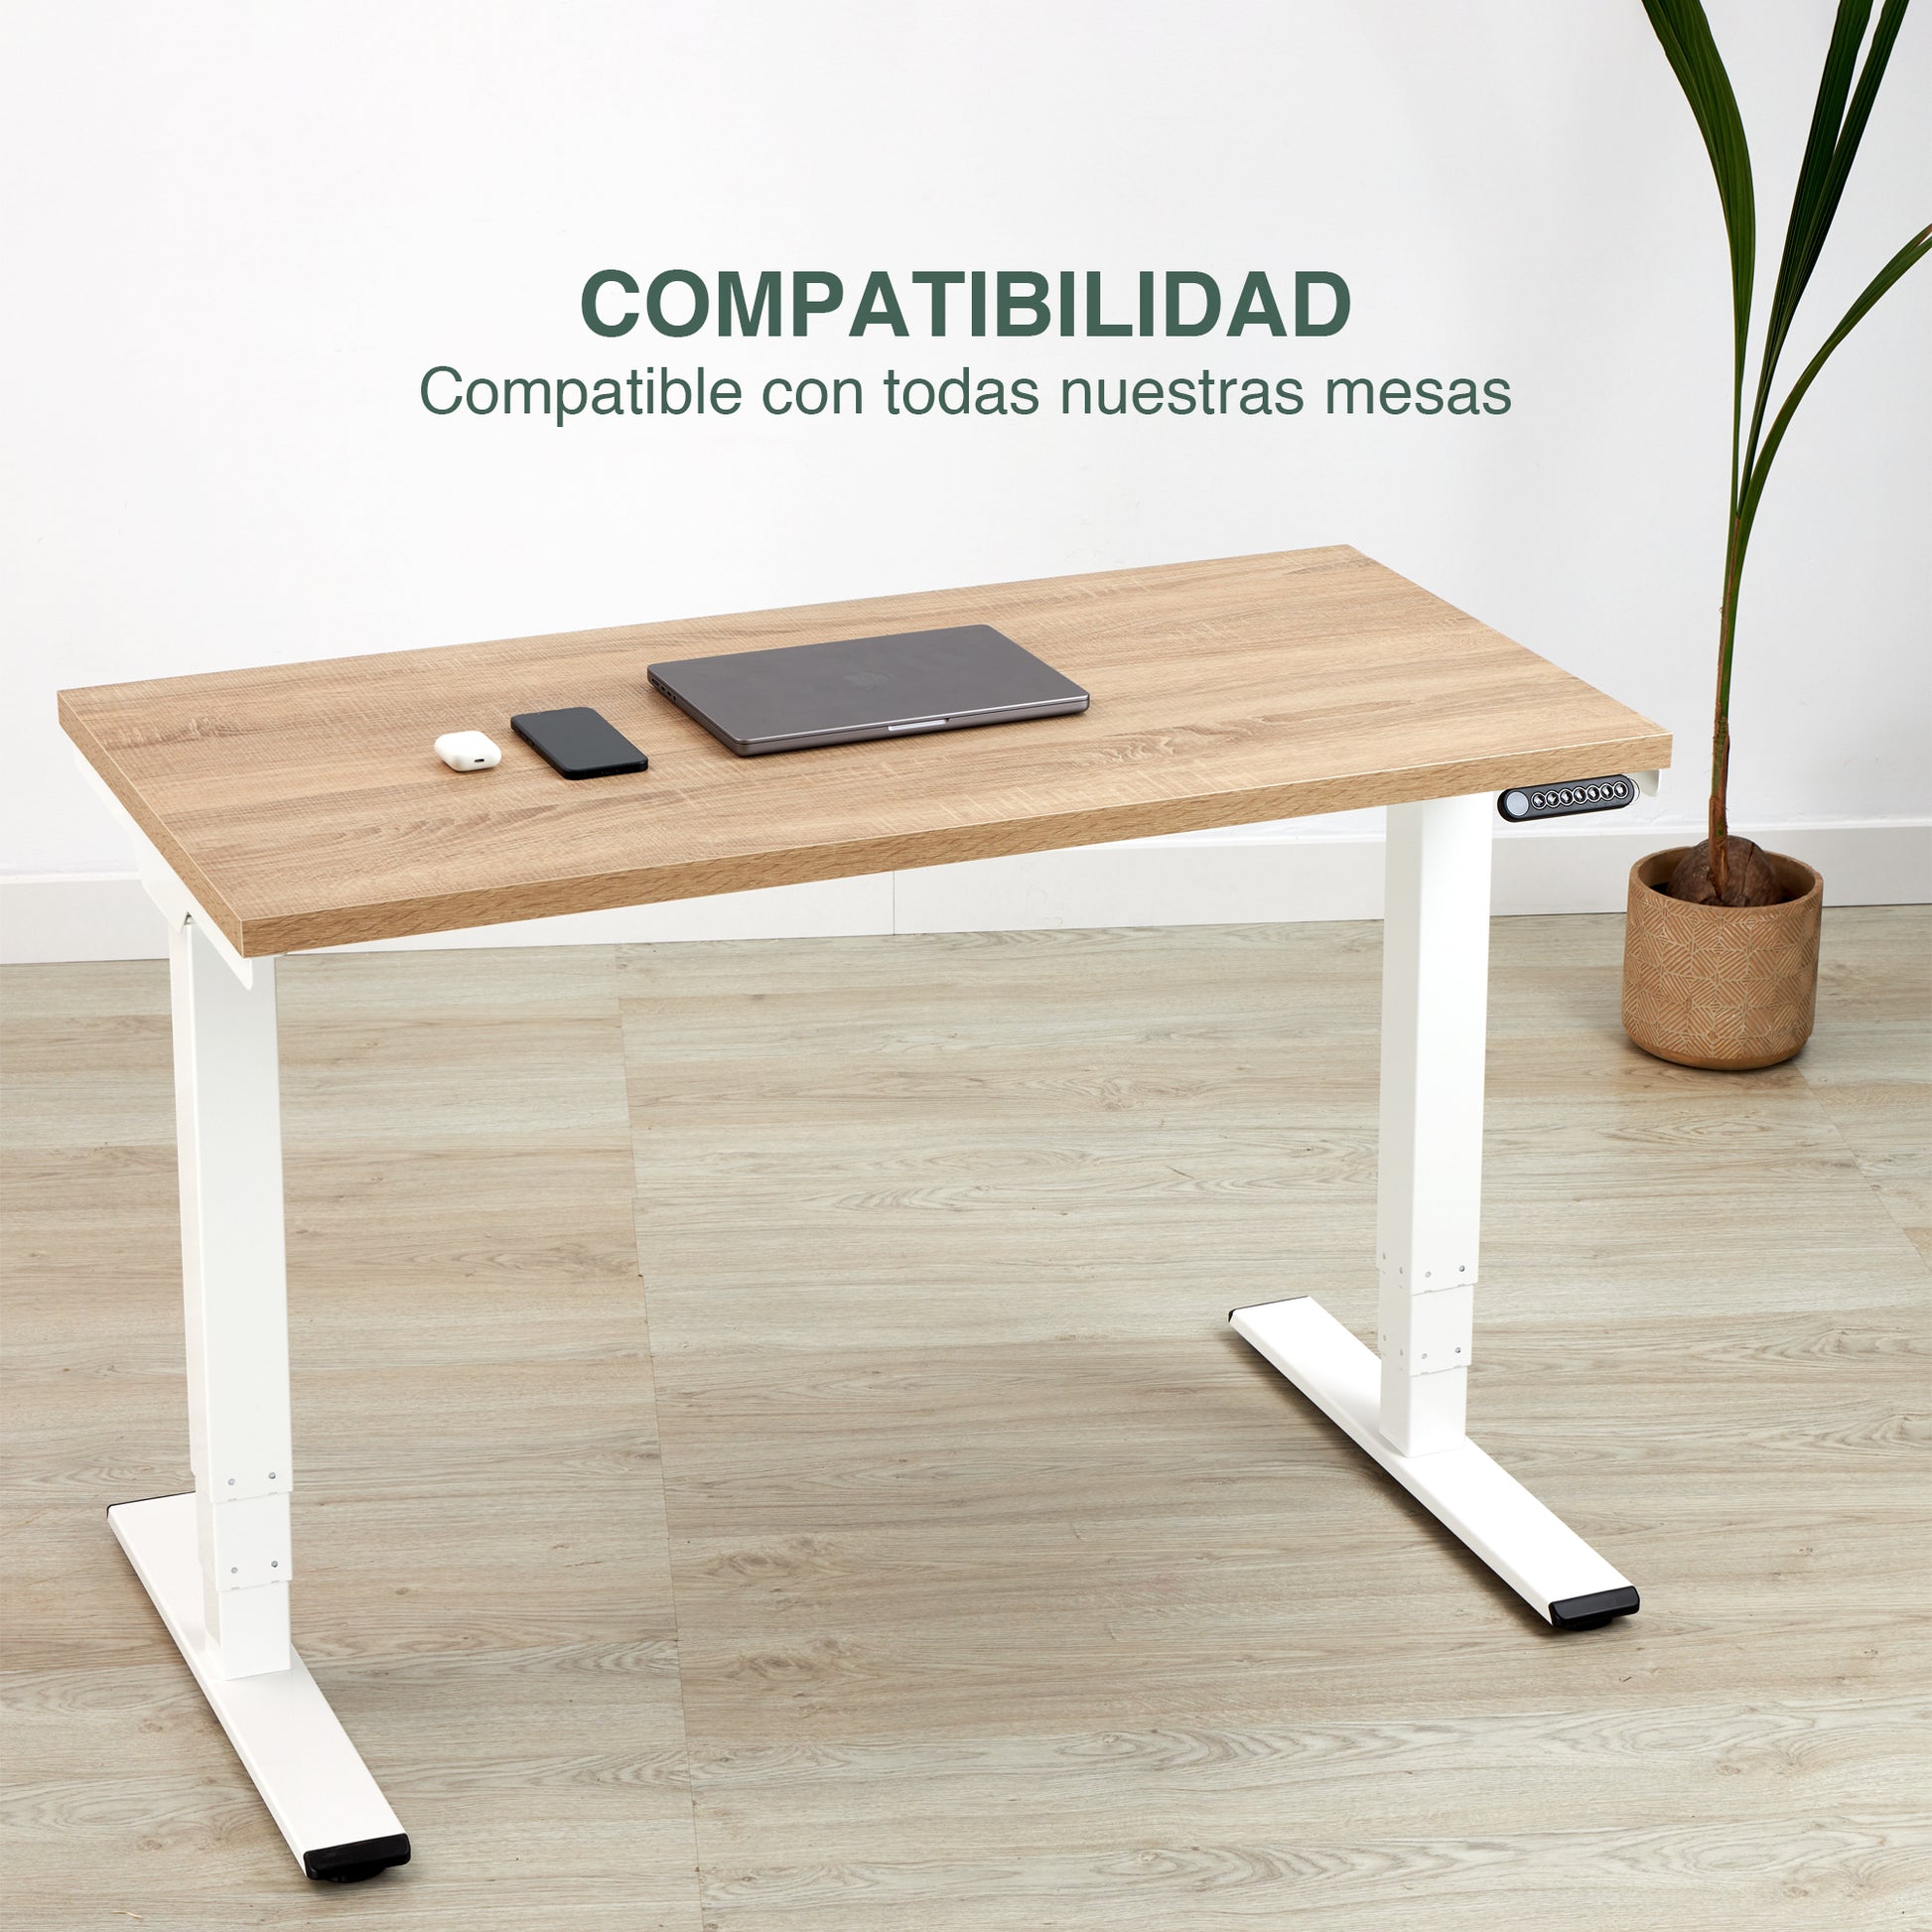 Tablero de madera para escritorio regulable - Tablakala